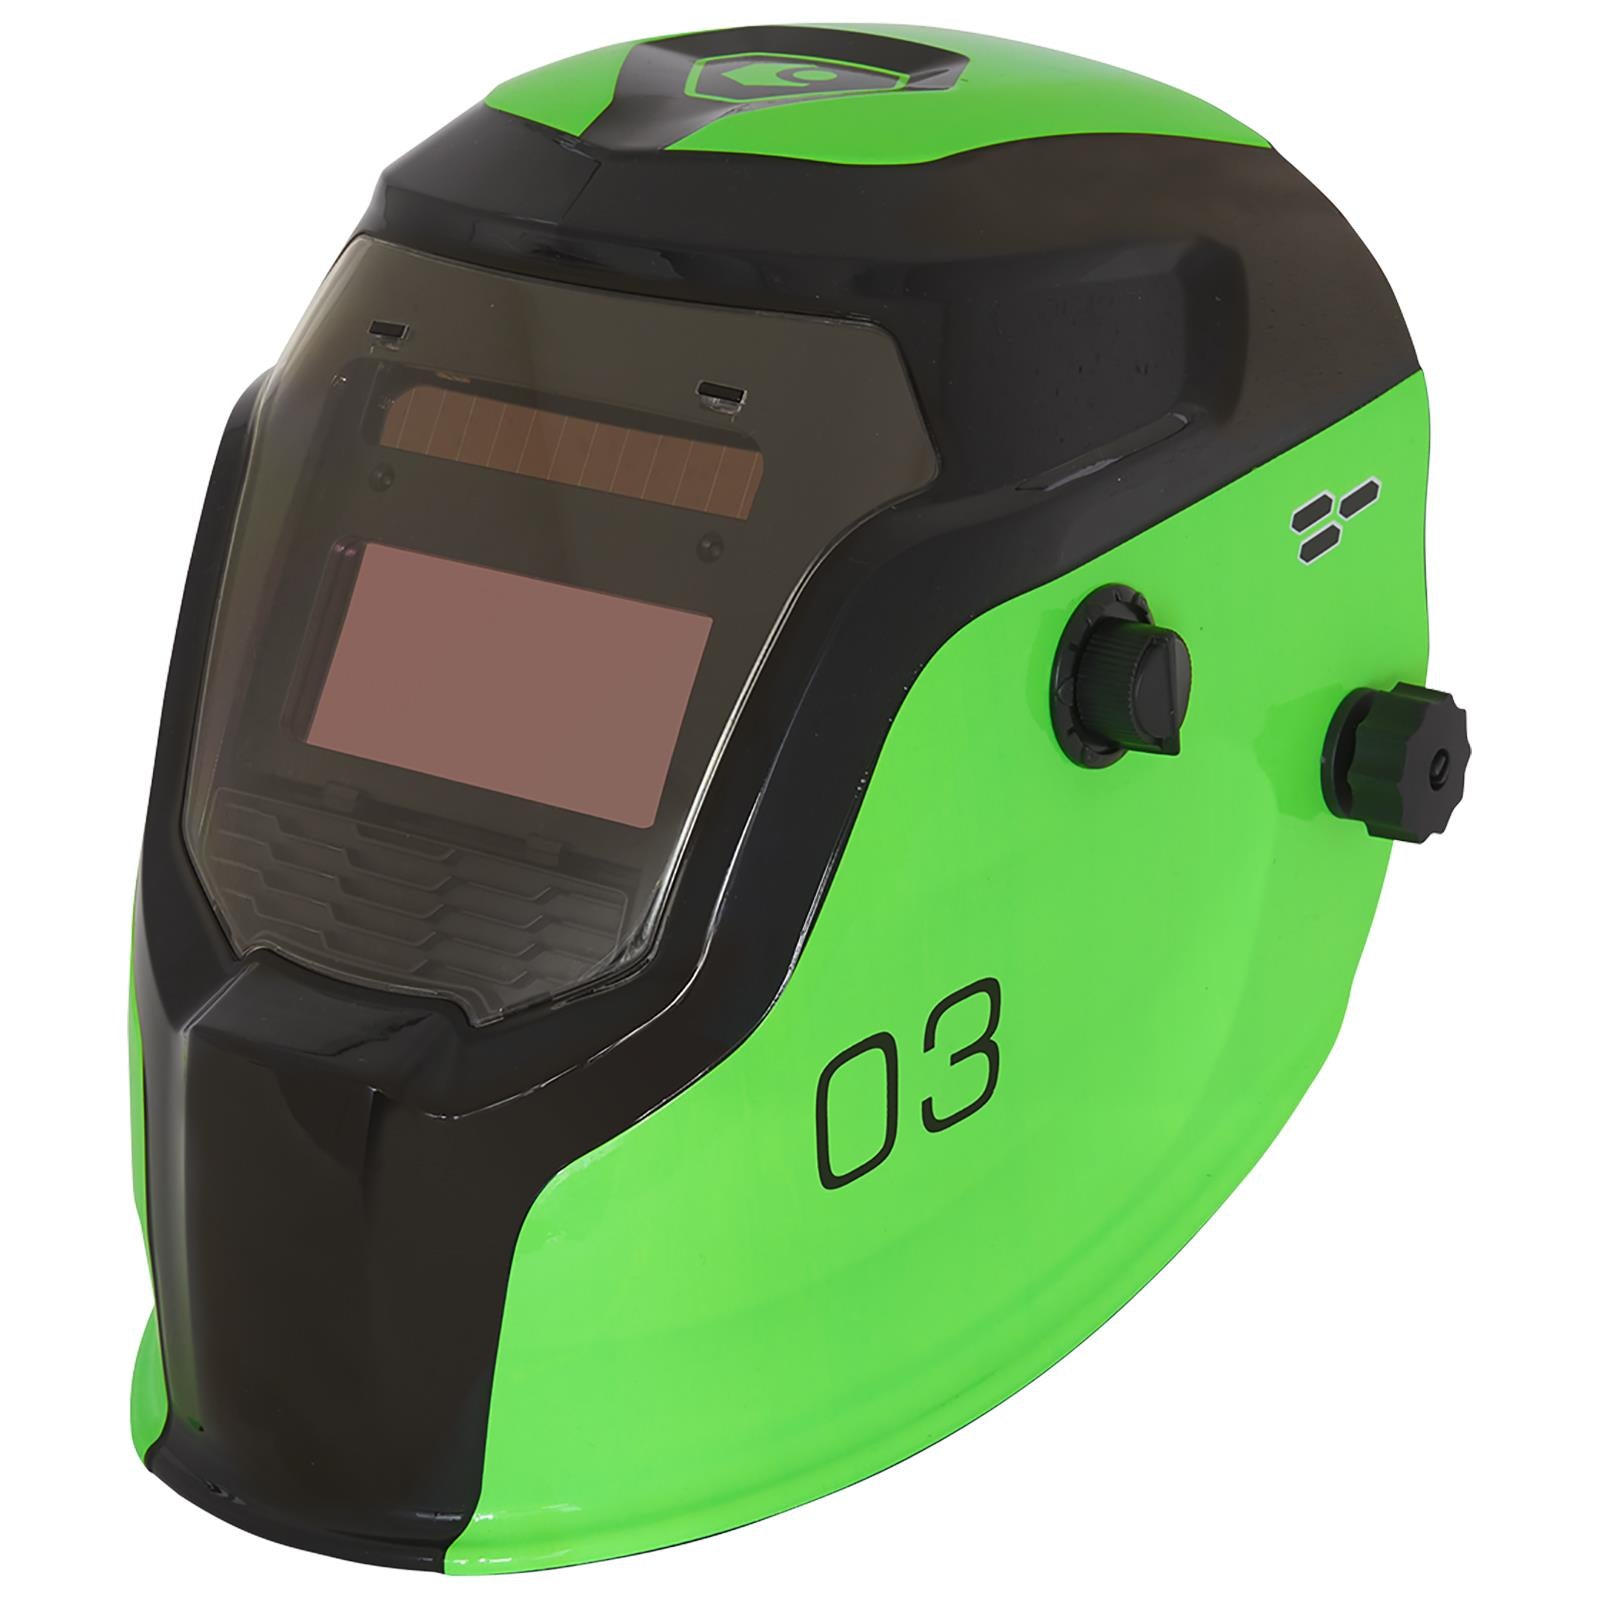 Sealey Auto Darkening Welding Helmet Shade 9-13 Green